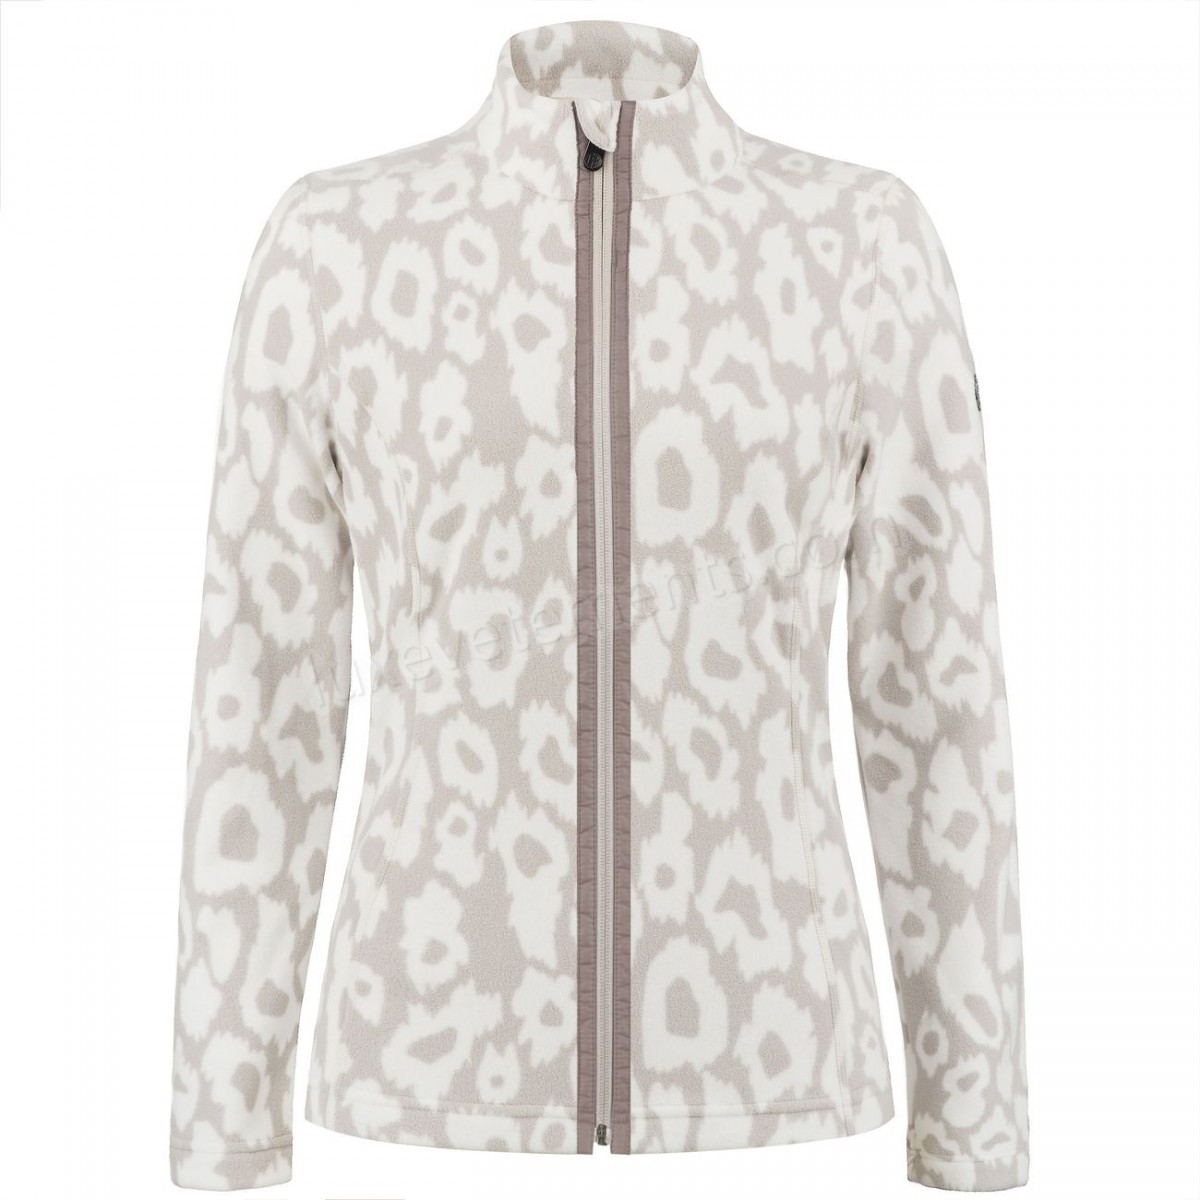 Poivre Blanc-Sports d'hiver femme POIVRE BLANC Veste Polaire Poivre Blanc Fleece Jacket 1500 Panther Grey Femme Vente en ligne - -4